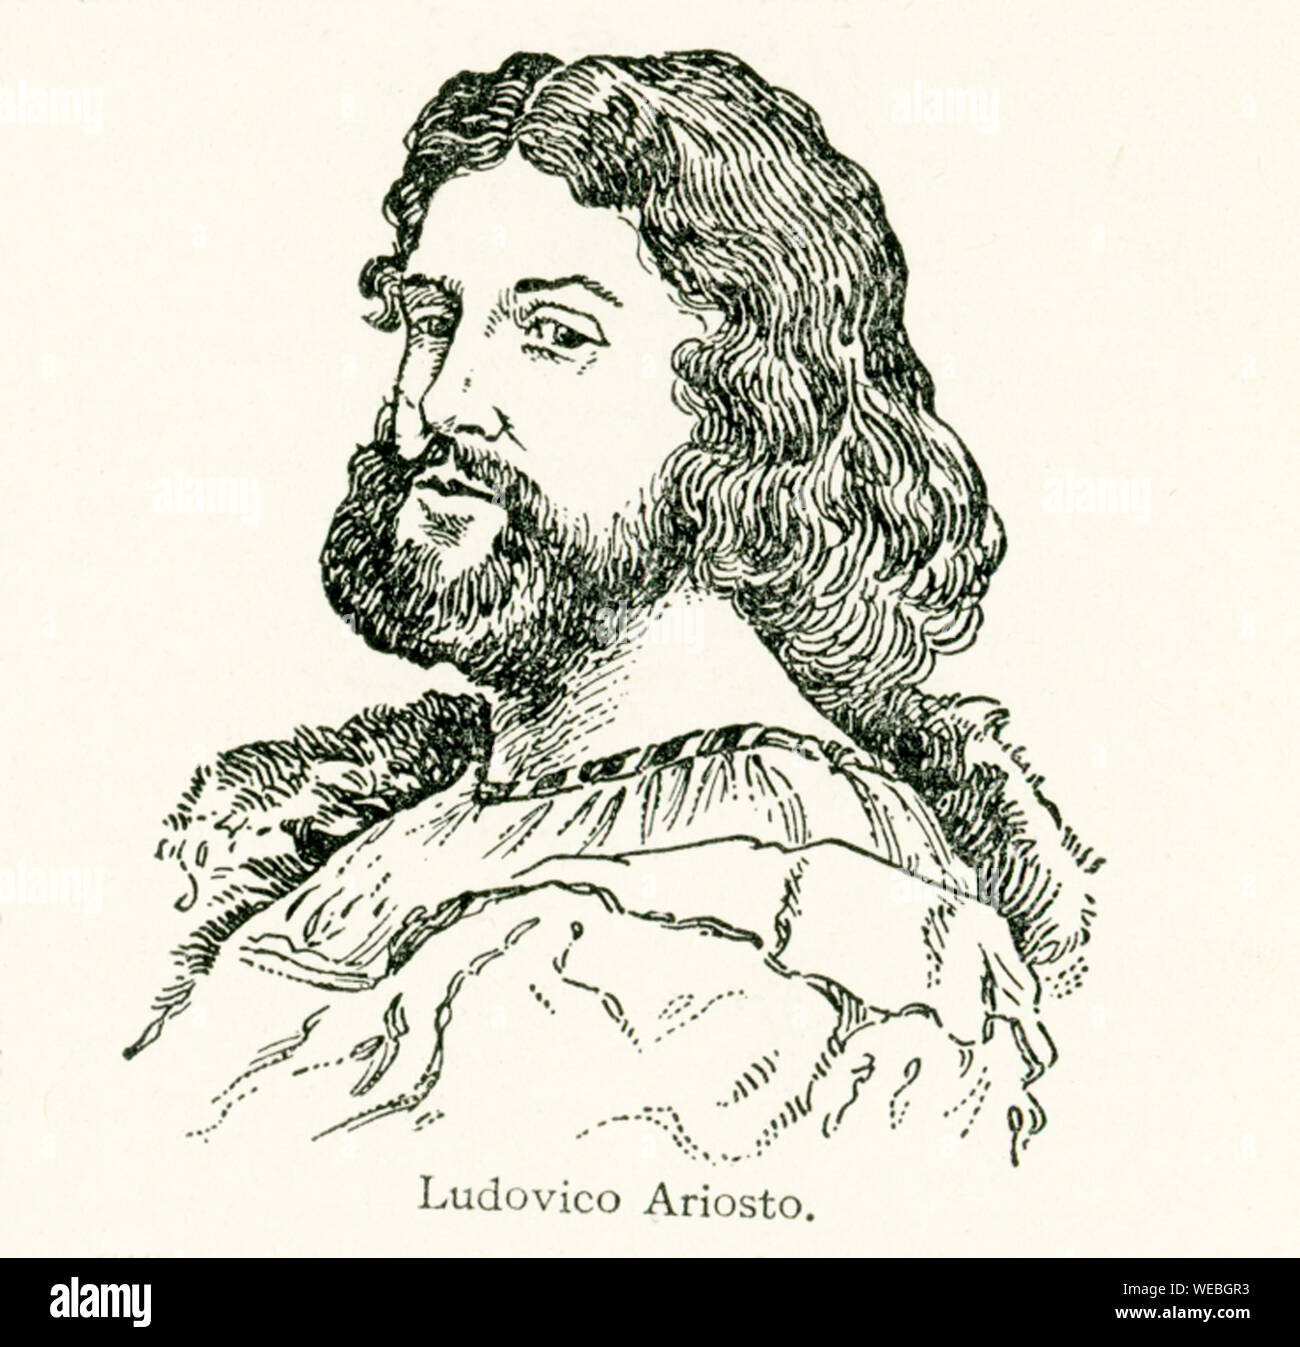 Ludovico Ariosto è stato uno dei più celebri poeti d'Italia. Egli era nato a Reggio in Lombardia in data 8 settembre 1474, di una famiglia nobile. Morì il 6 giugno 1533. Il suo poema immortale, l'Orlando Furioso, è stato pubblicato nel 1515. Foto Stock